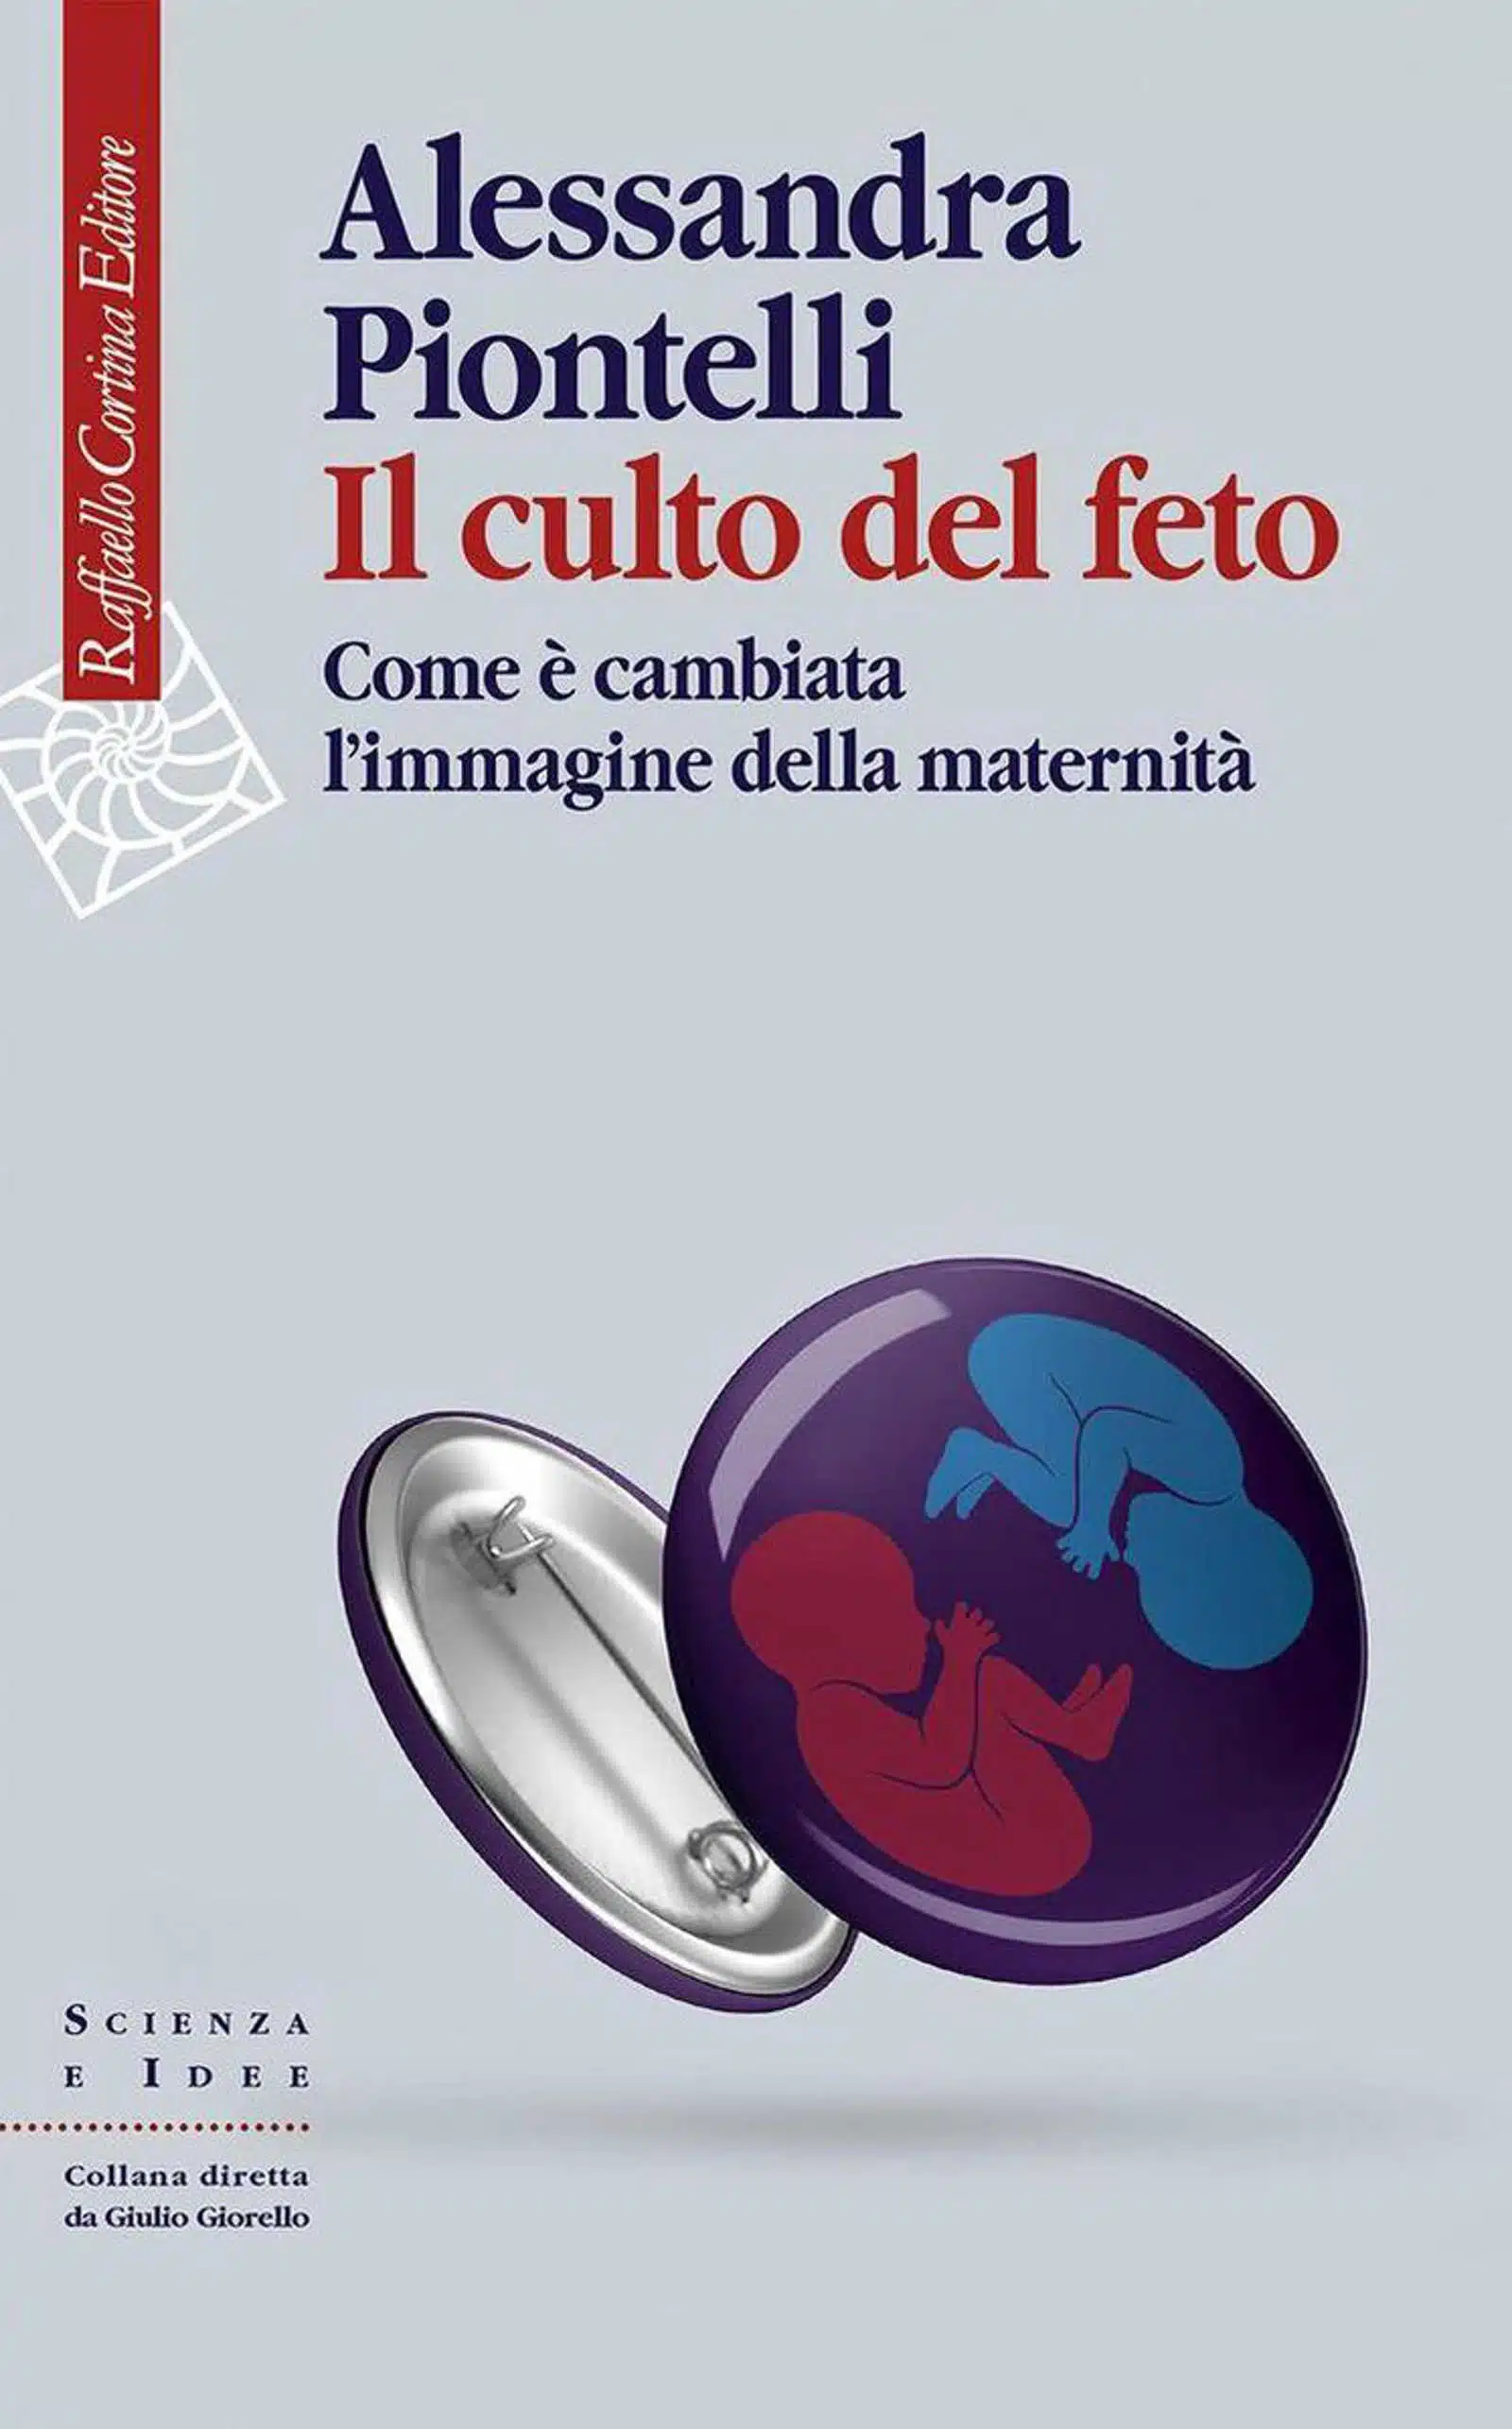 Il culto del feto 2020 di Alessandra Piontelli Recensione del libro Featured